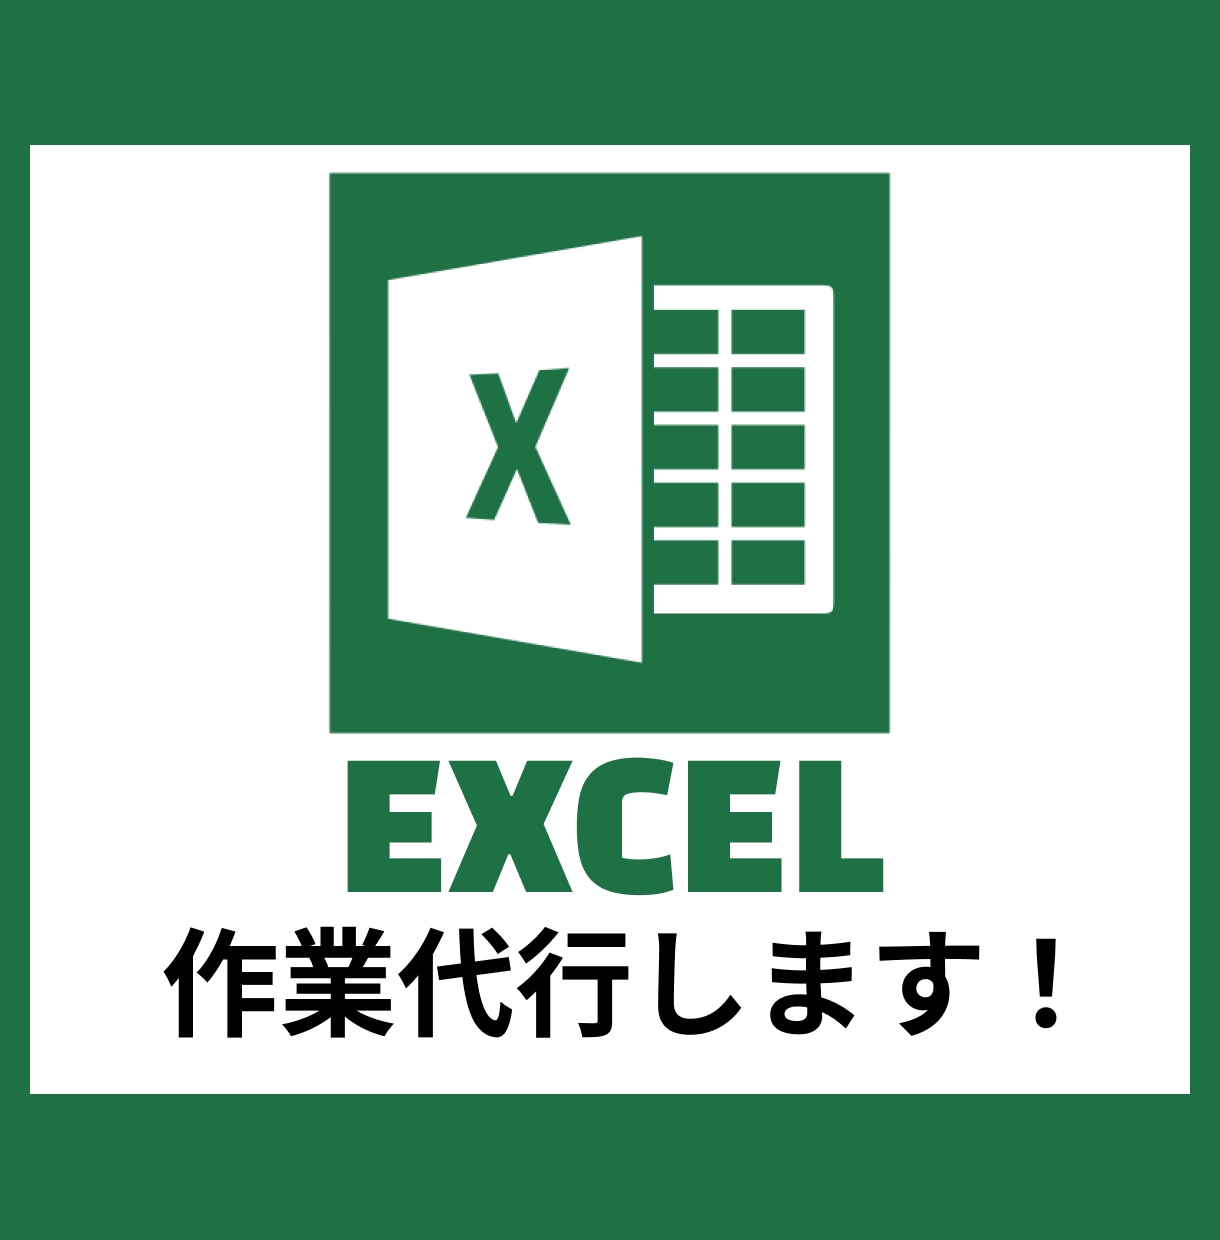 Excelの作業代行します データ整理・集計・テンプレート作成・業務ツール作成など イメージ1